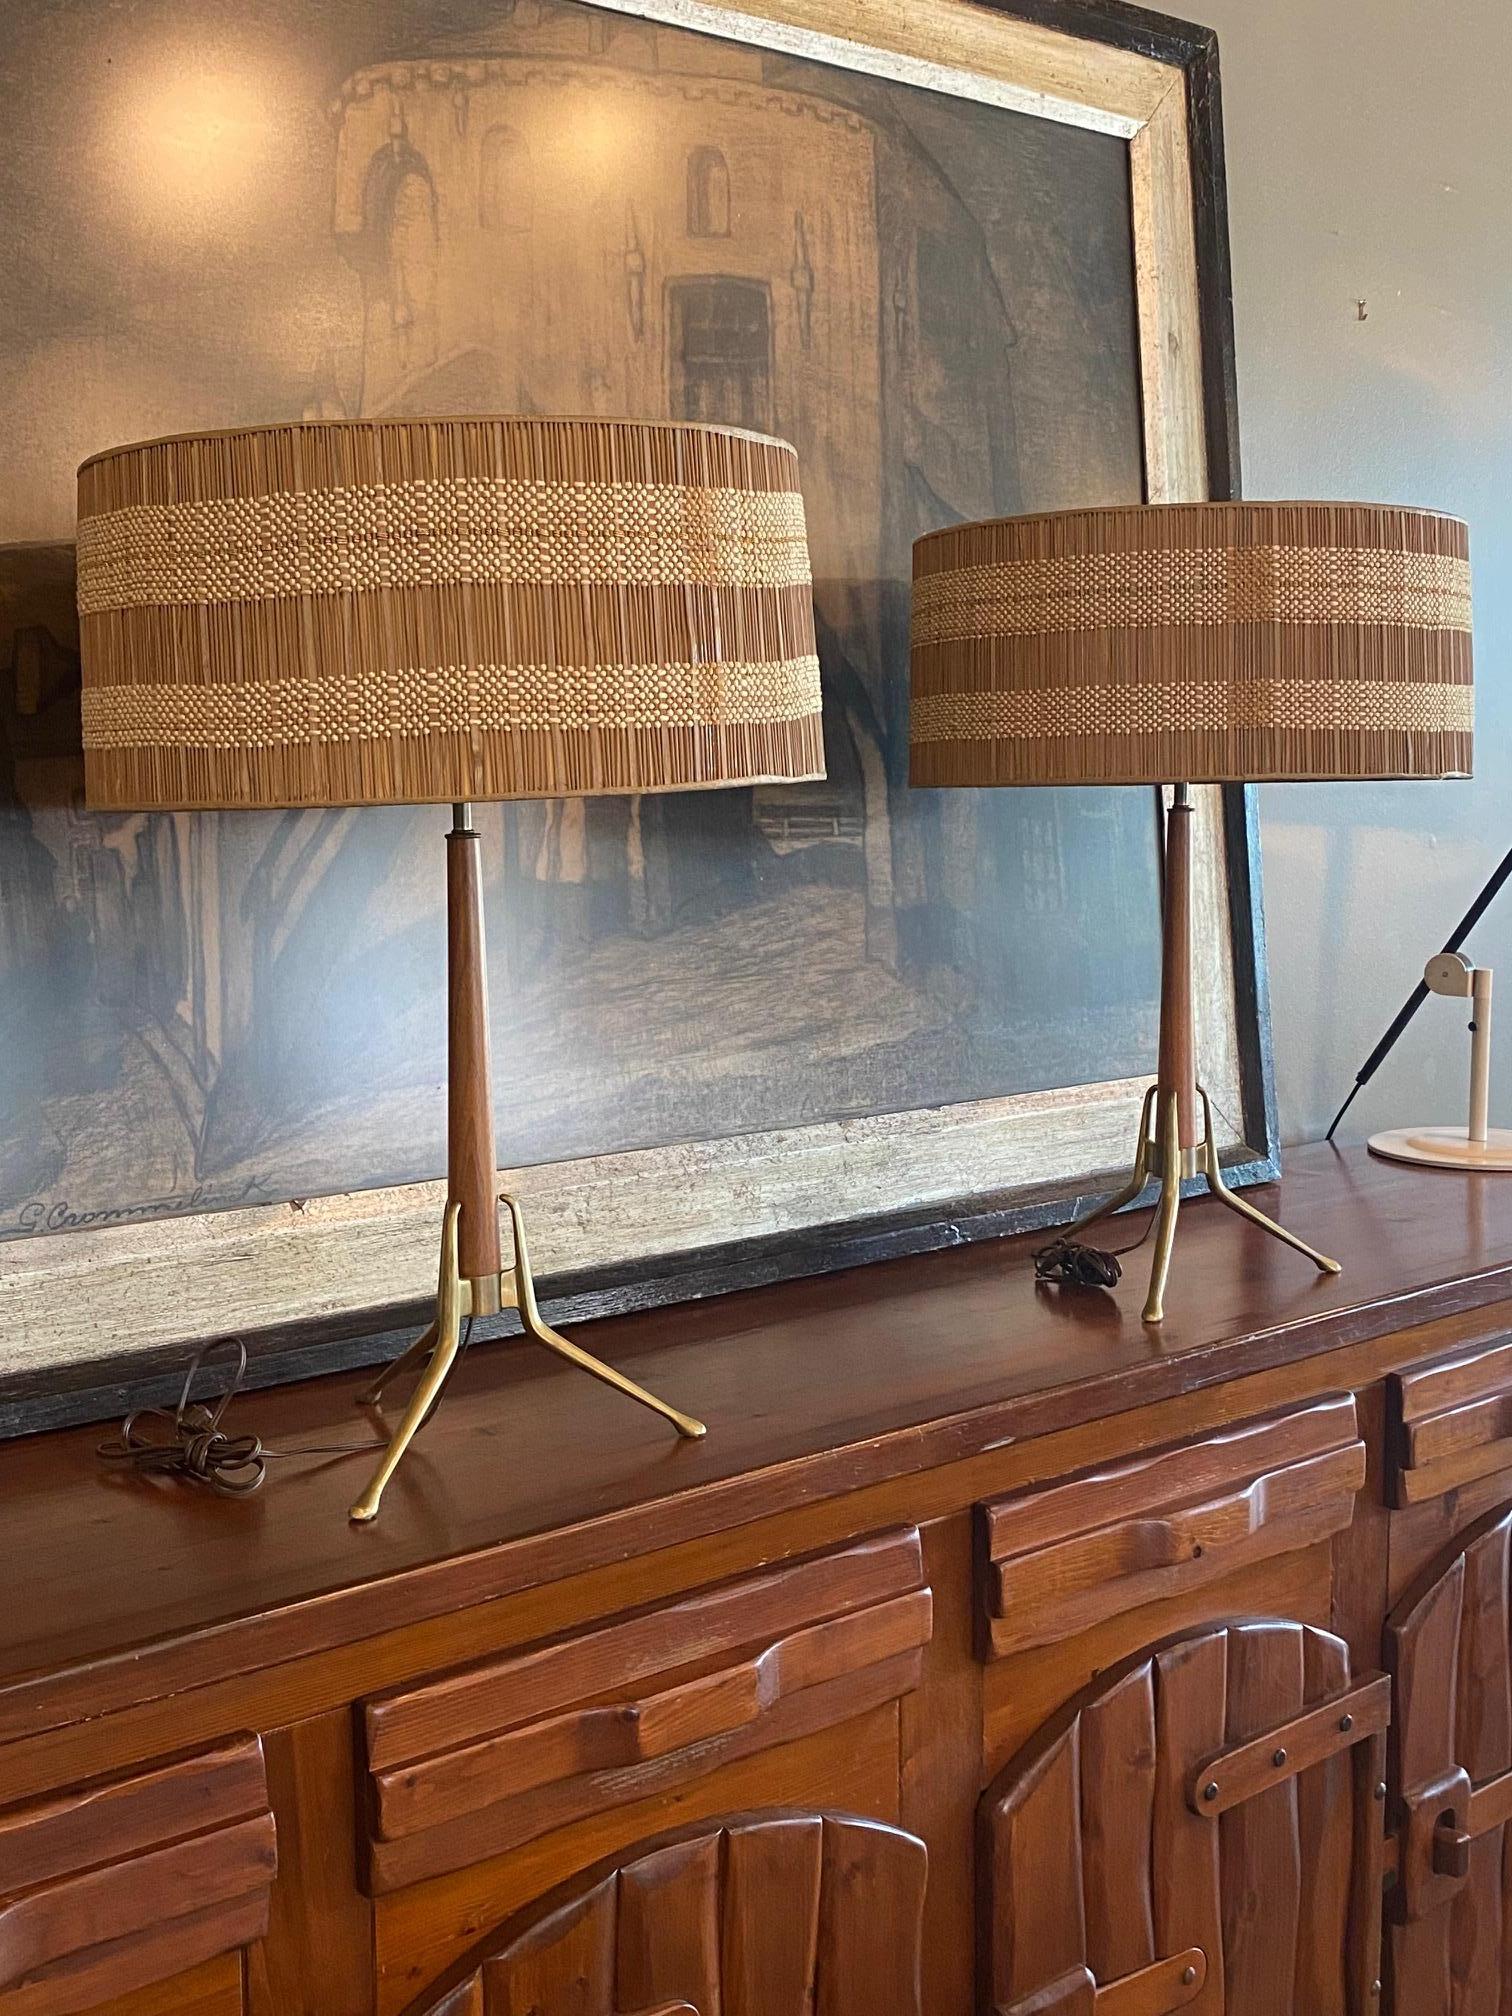 Gerald Thurston For Lightolier tripod mid century modern table lamps. Paire originale de lampes en laiton et noyer assorties, avec diffuseurs en métal perforé et abat-jour d'époque Maria Kipp. La douille à trois ampoules permet de varier